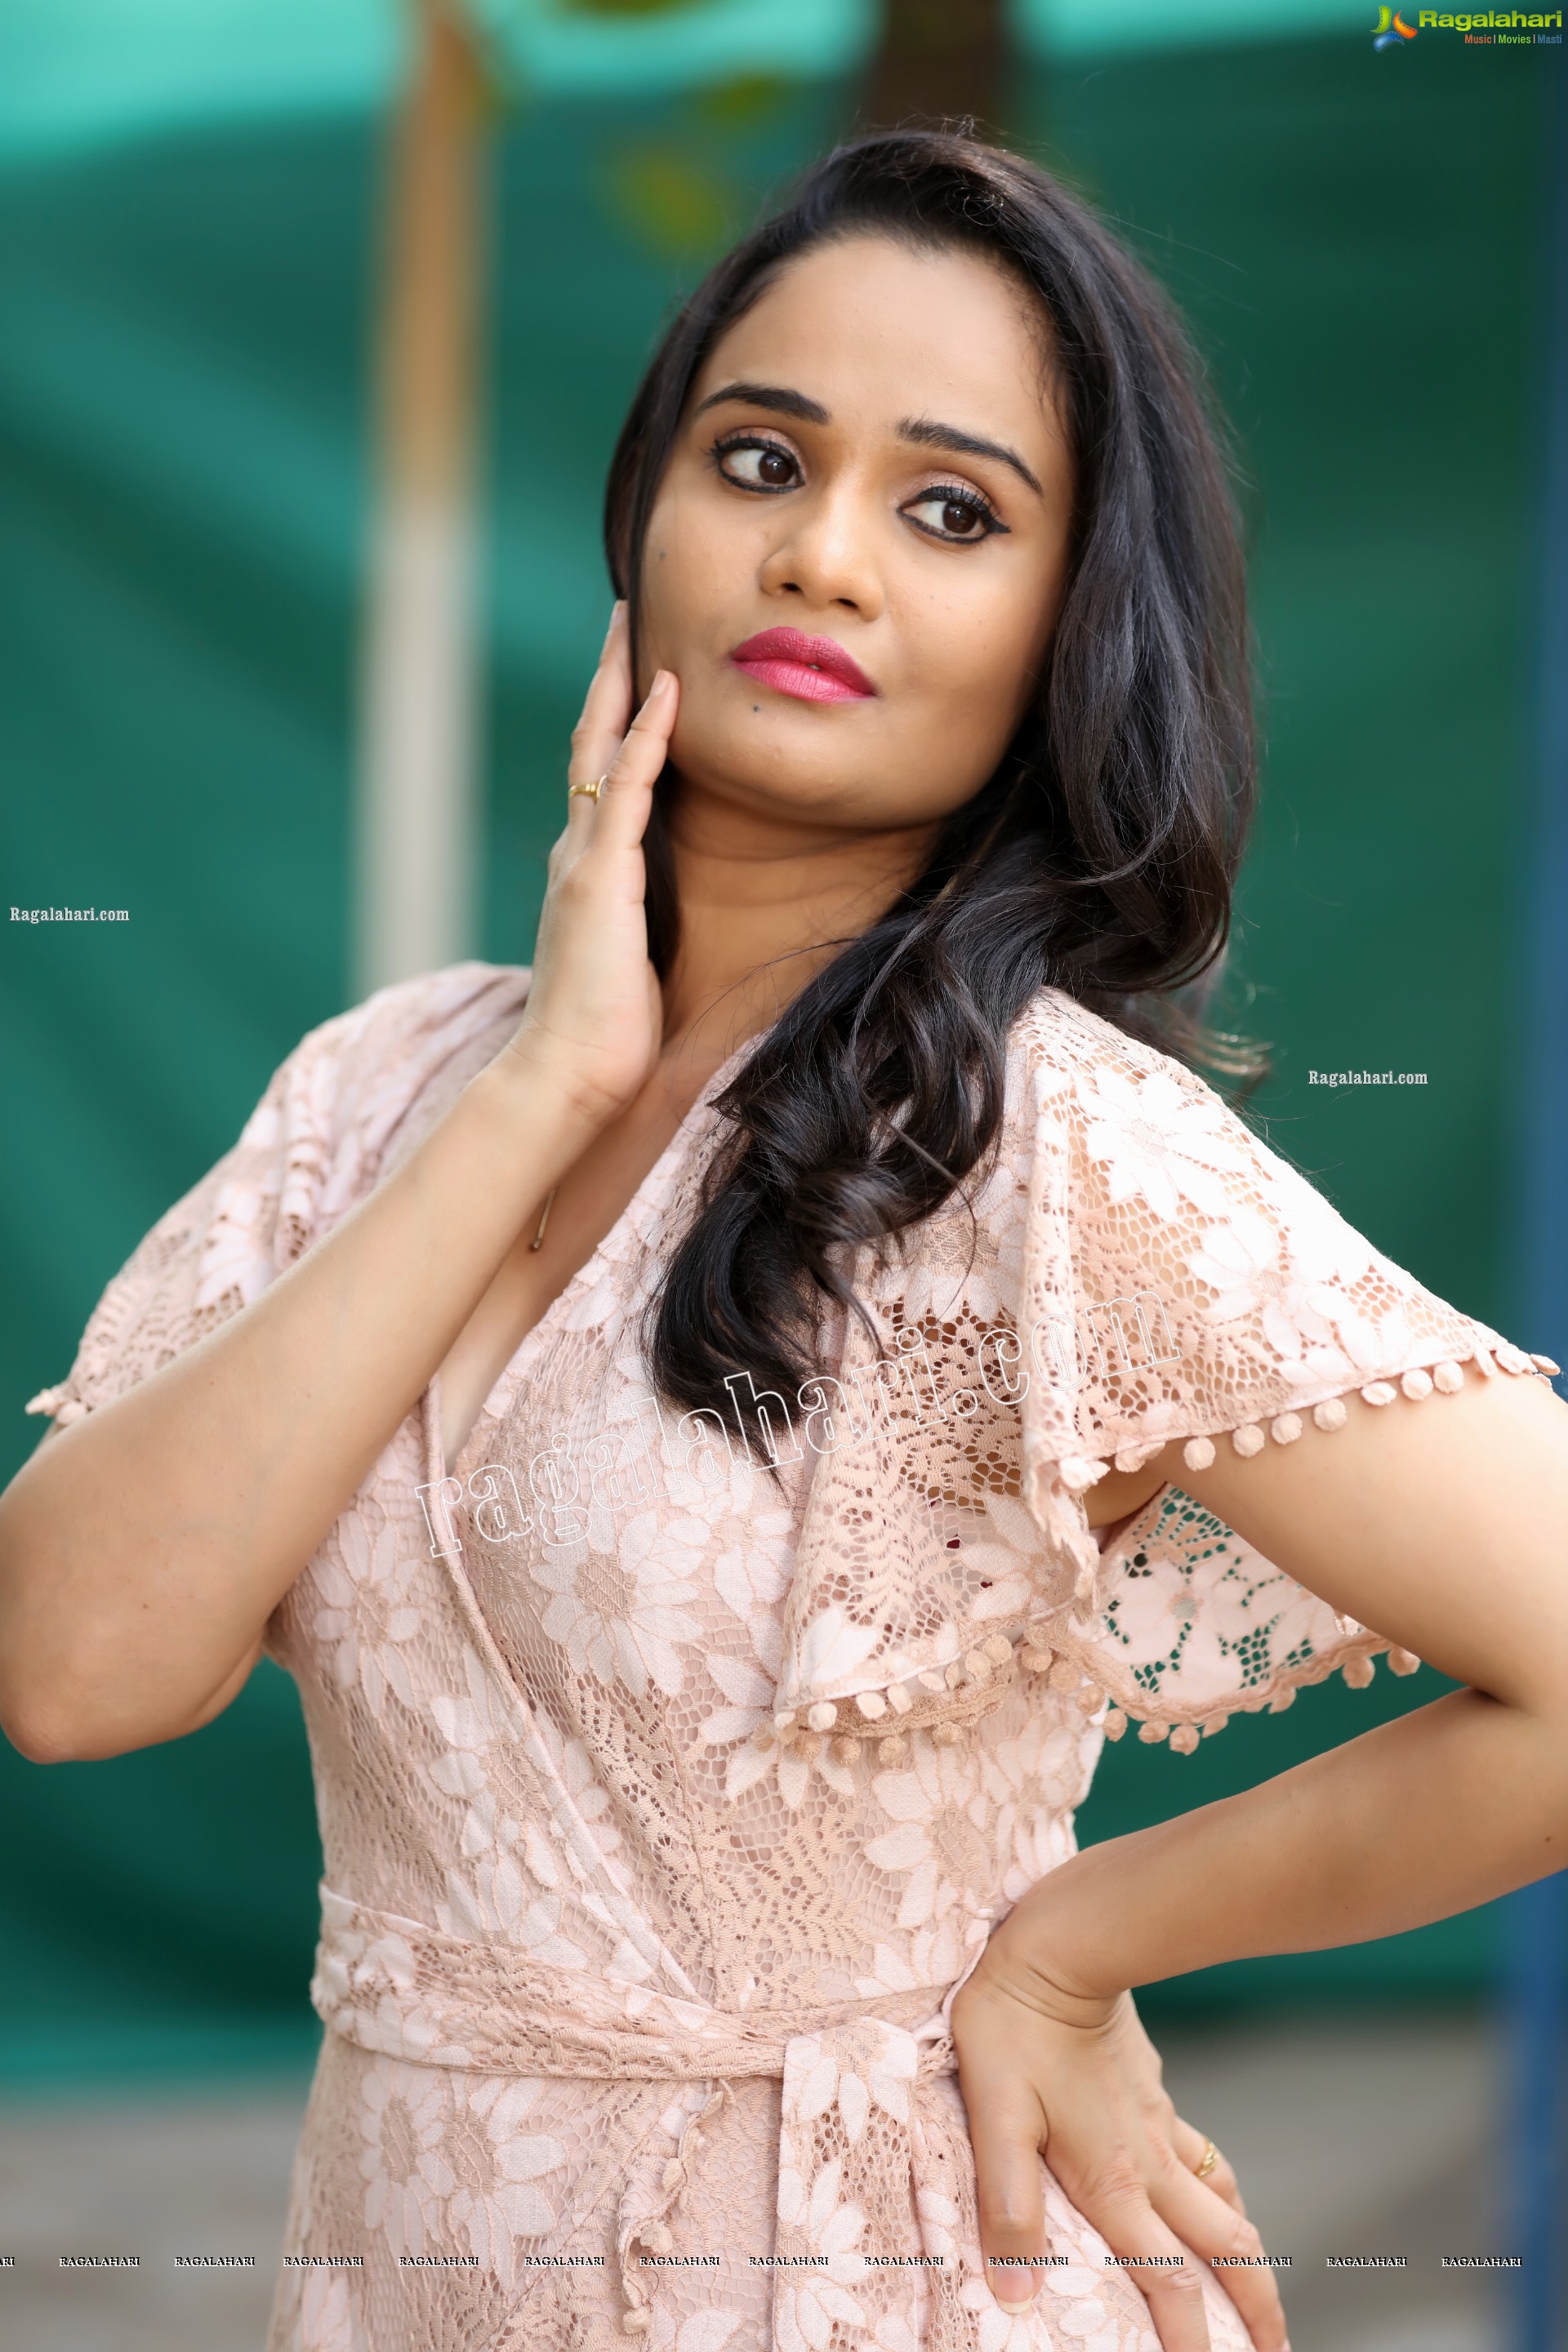 Usha Kurapati in Champagne Lace Mini Dress, Exclusive Photo Shoot